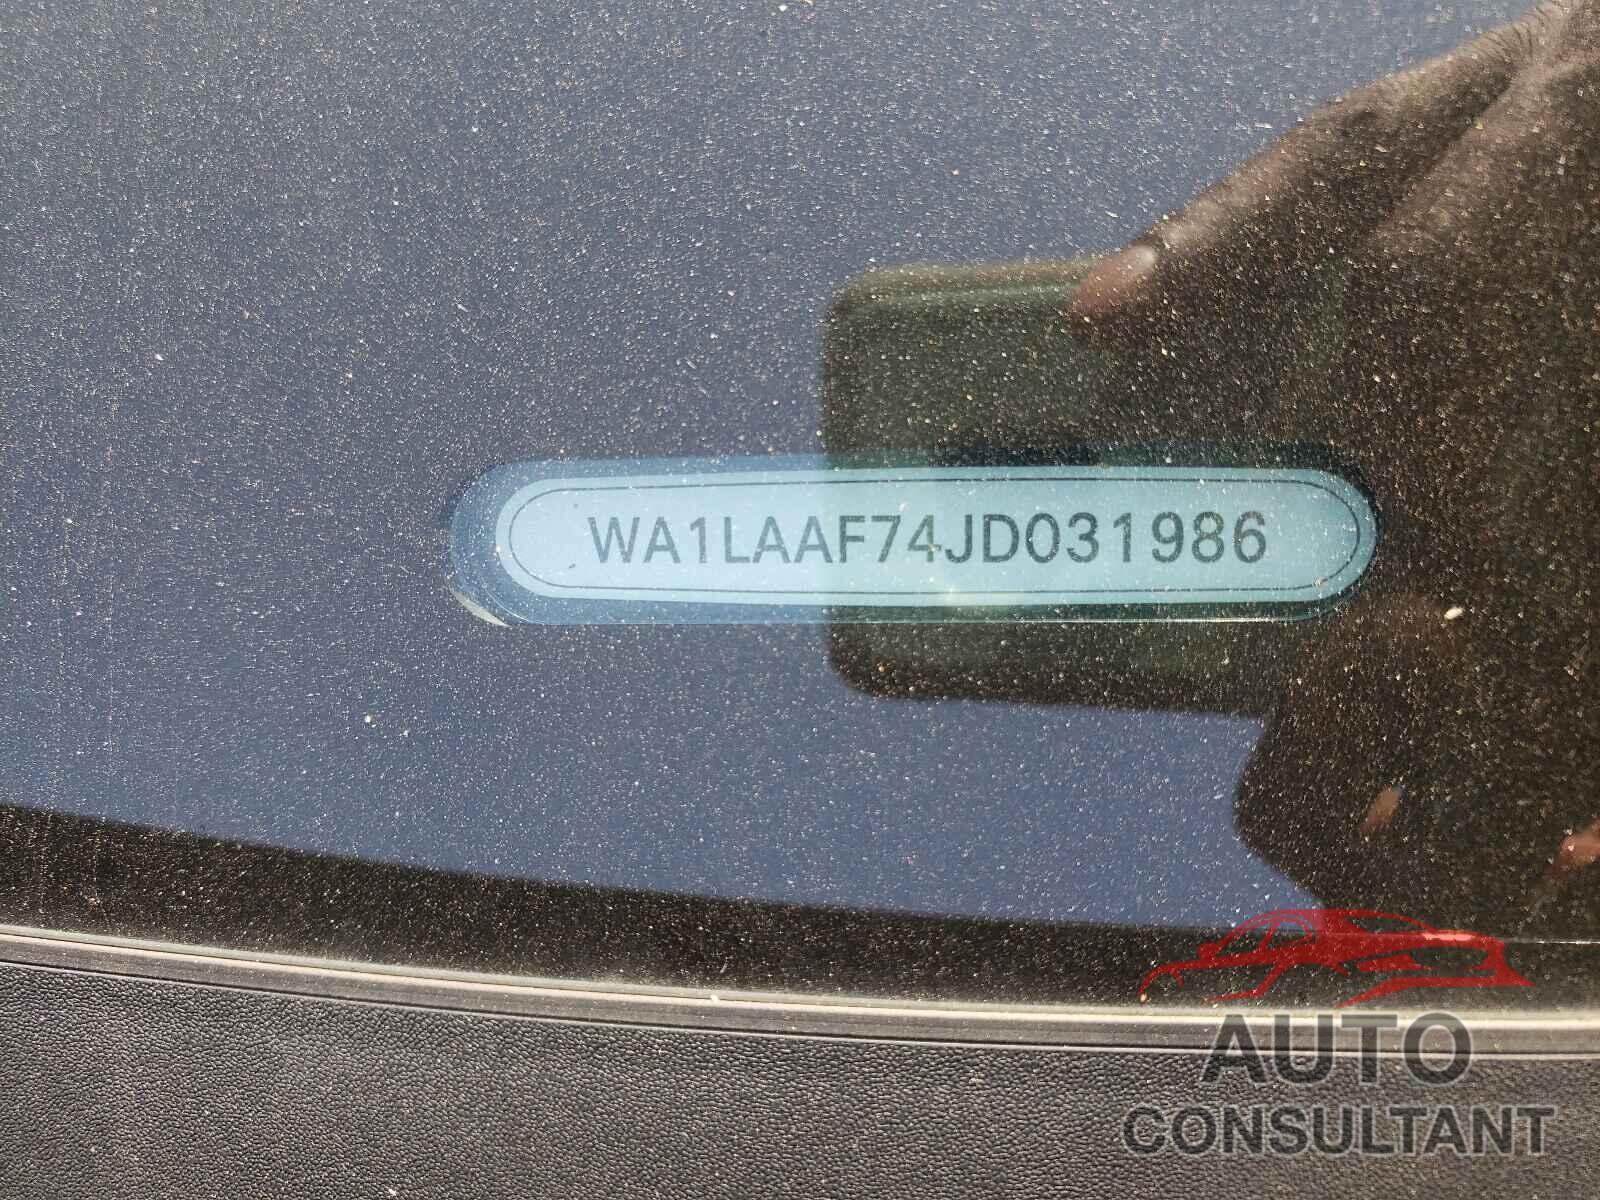 AUDI Q7 2018 - WA1LAAF74JD031986